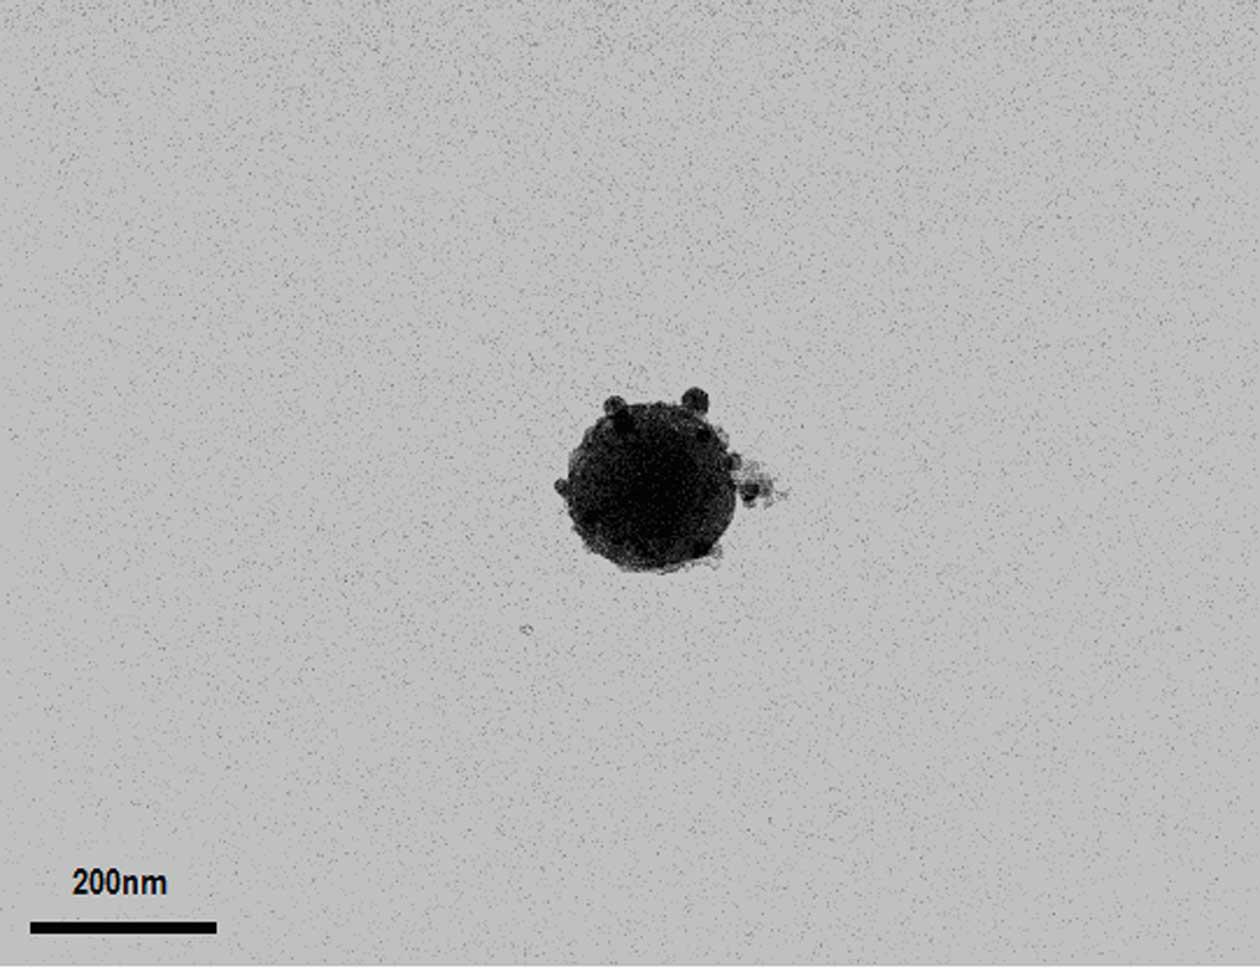 Method for preparing soft magnetic mesoporous nickel-zinc ferrite microspheres